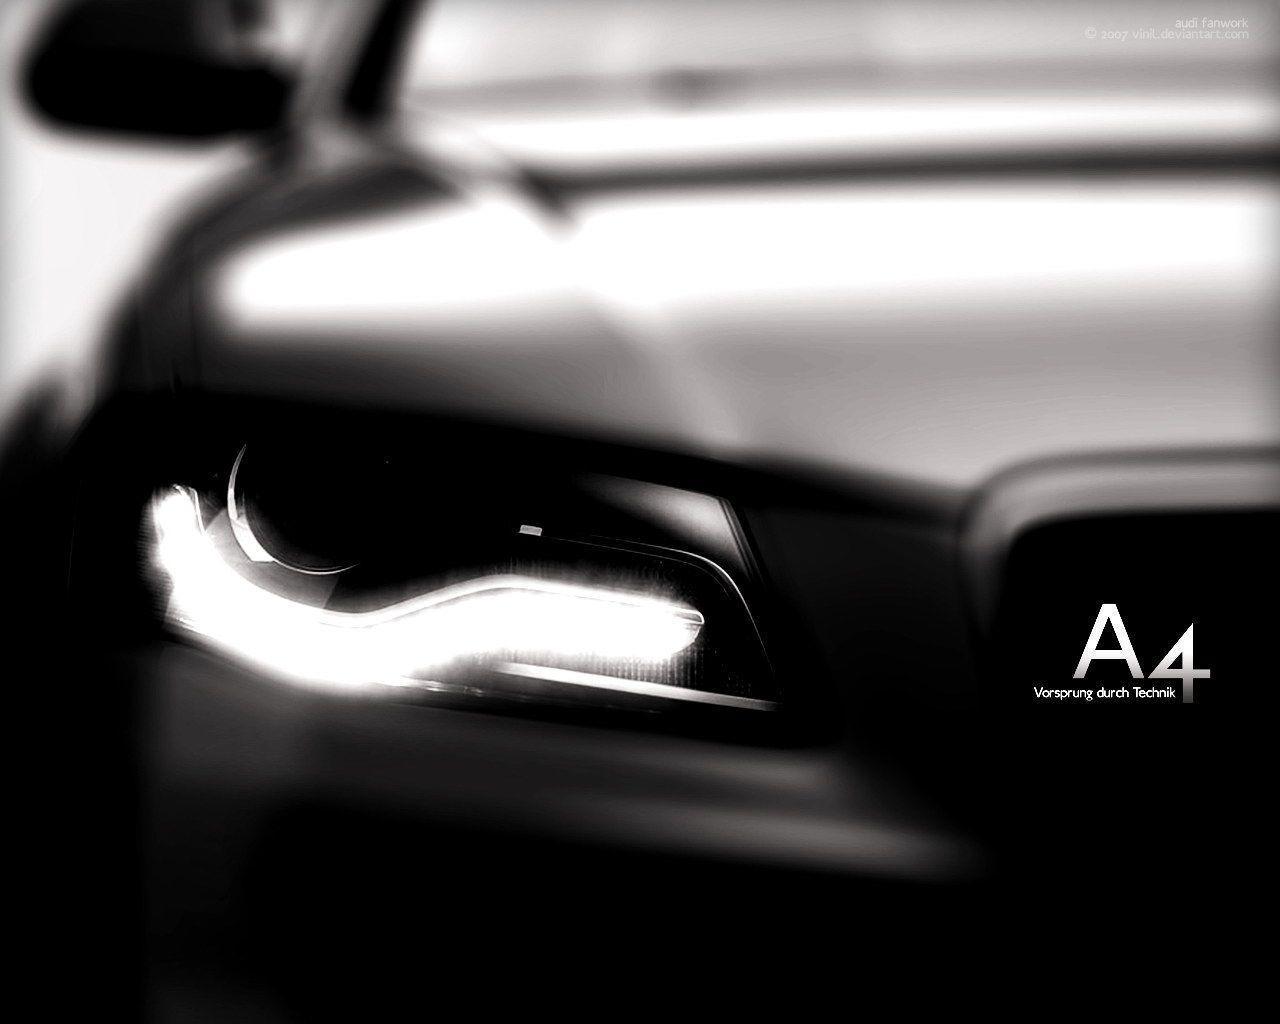 Audi A4 Wallpaper For Ipad